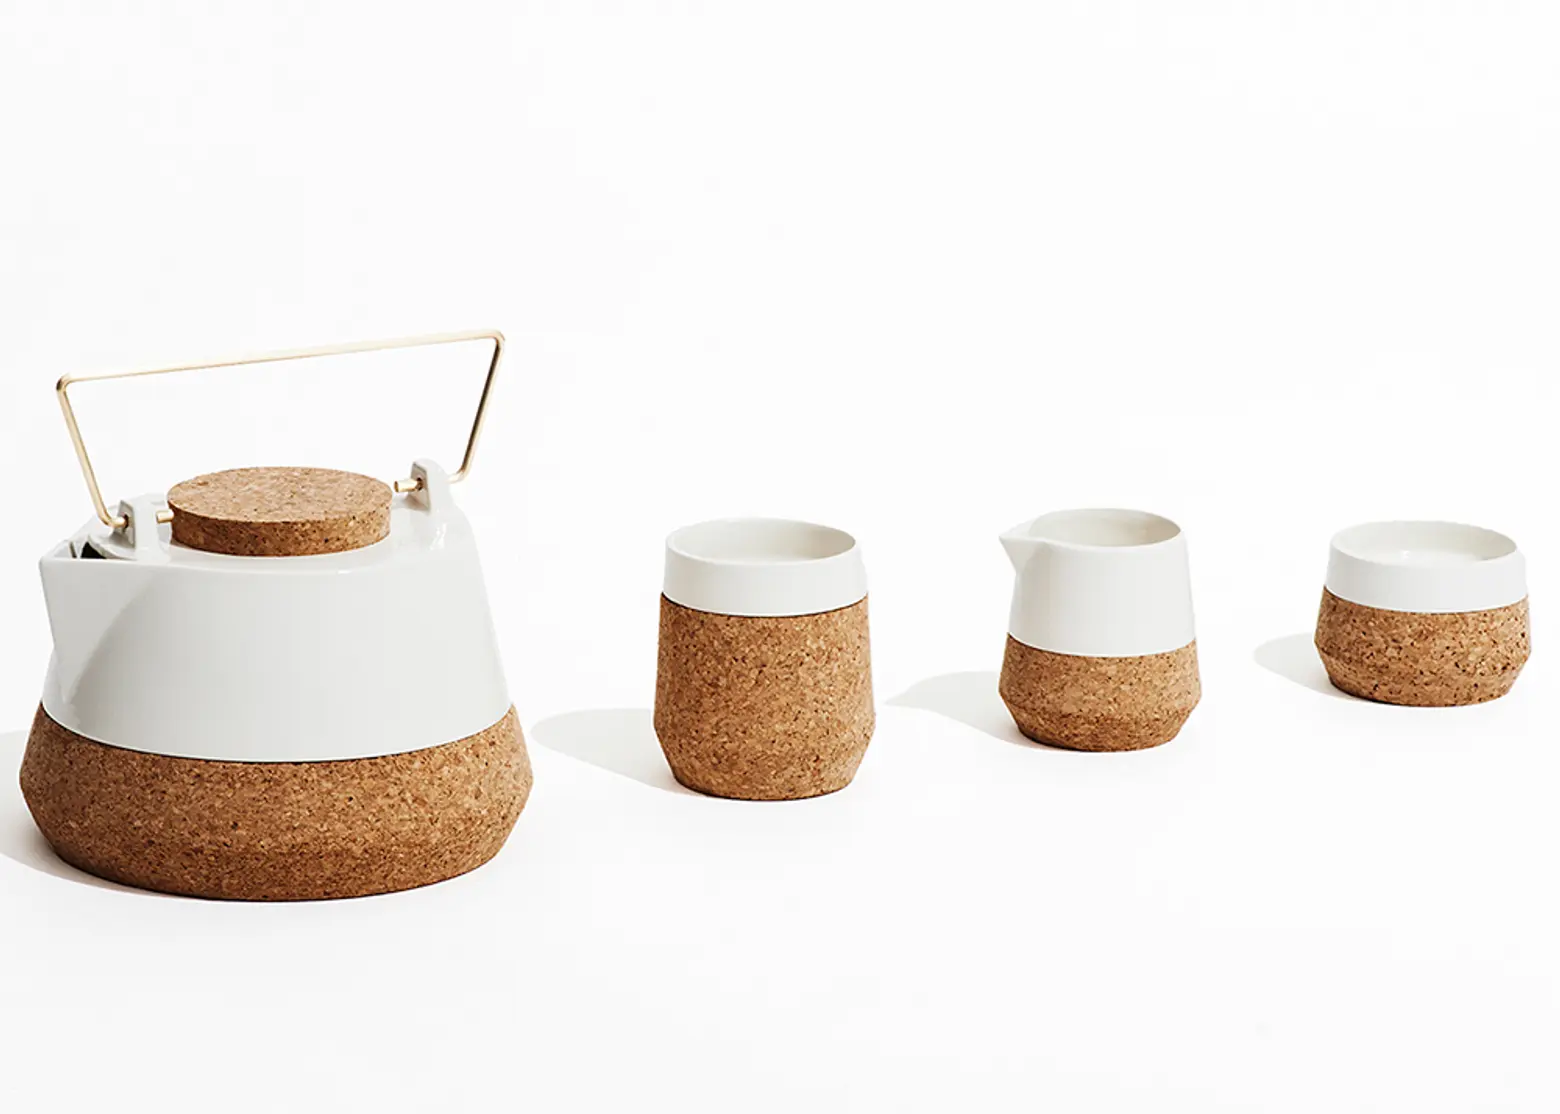 Studio FEM's Koruku Tea Set Enhances One of Life's Most Simple Pleasures